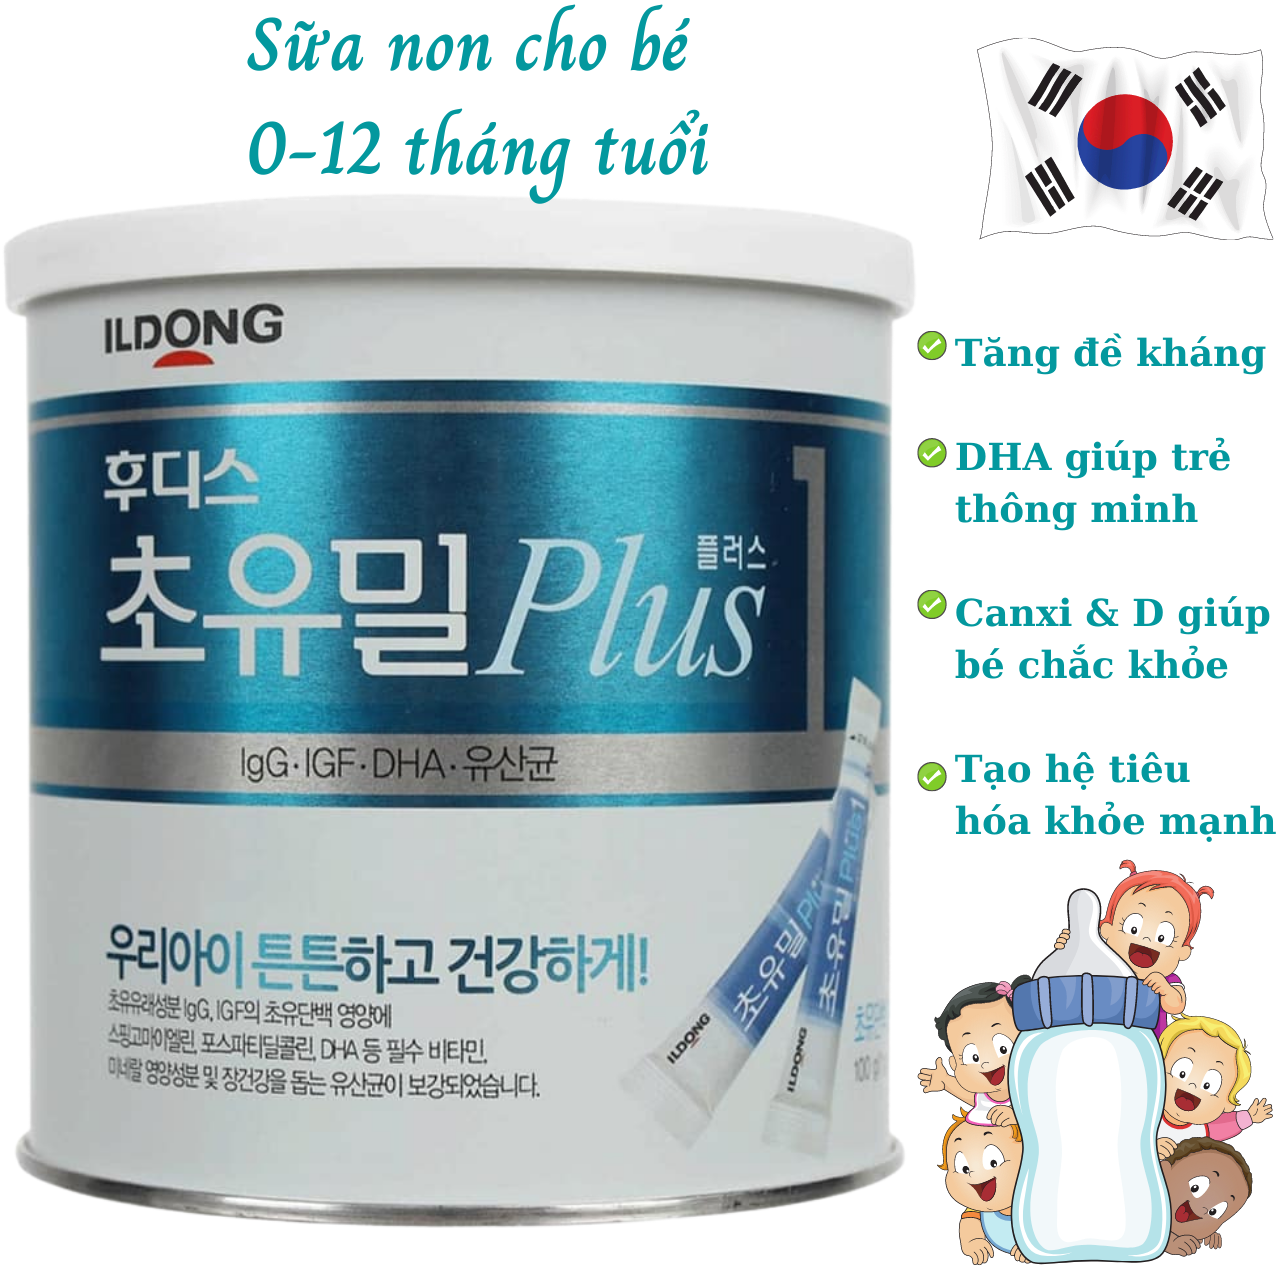 Sữa Non Cho Trẻ Sơ Sinh 0-12 Tháng Tuổi ILDong Foodis Plus 1 NK Hàn Quốc Chứa Hàm Lượng Chất Dinh Dưỡng Cao Giúp Phát Triển Trí Não, Xương, Răng Và Thị Lực, Tăng Hệ Miễn Dịch, Tạo Hệ Tiêu Hóa Khỏe Mạnh